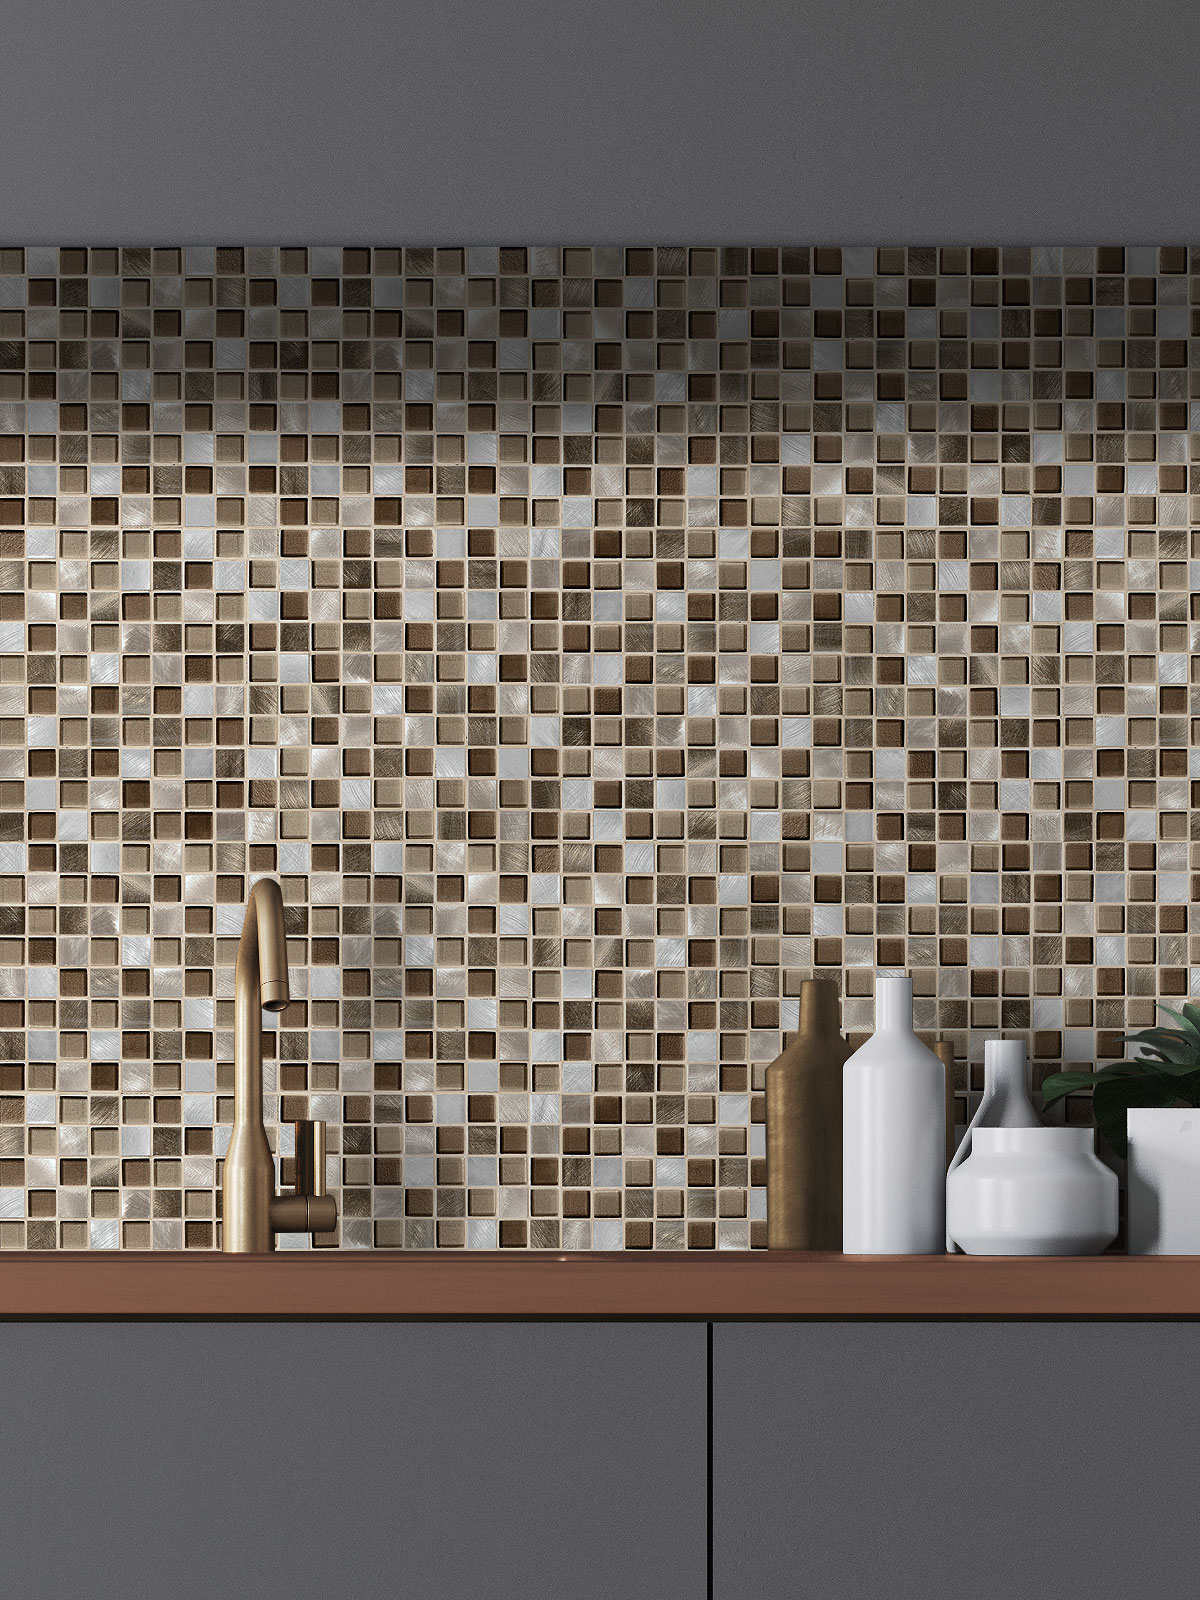 25 Best Kitchen Backsplash Ideas Tile Designs For Kitchen Modern Brown Kitchen Wall Tiles